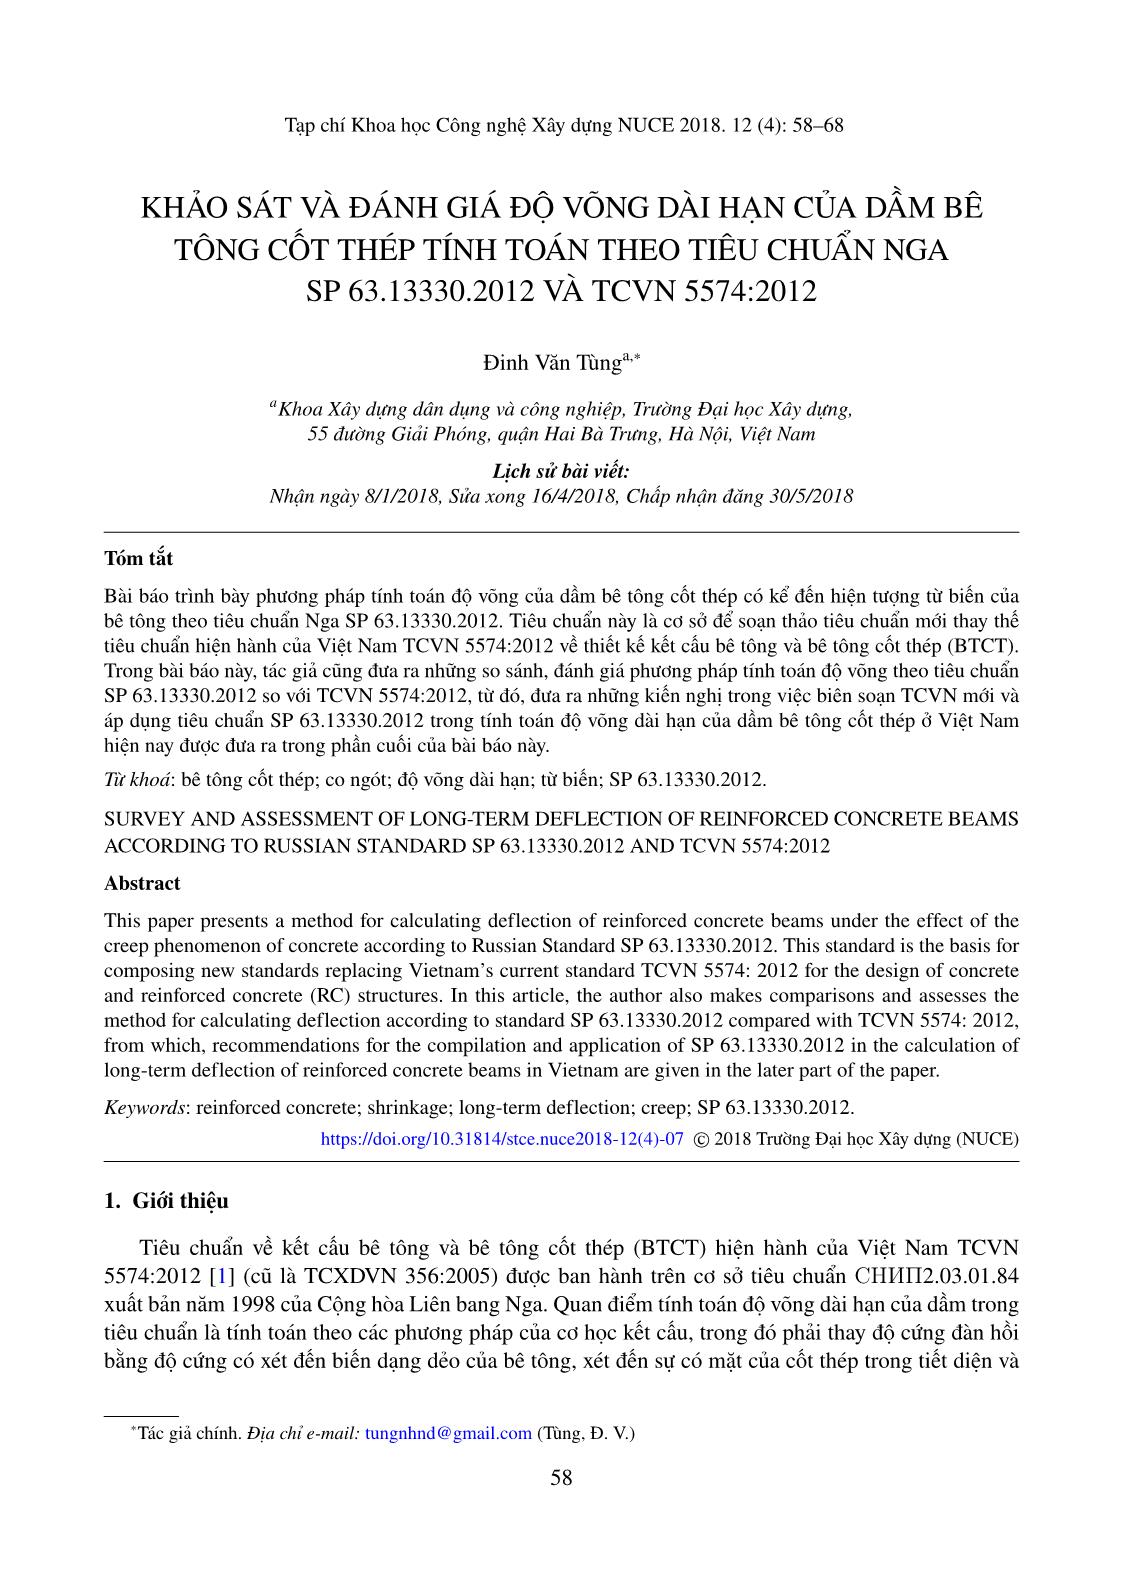 Khảo sát và đánh giá độ võng dài hạn của dầm bê tông cốt thép tính toán theo tiêu chuẩn nga SP 63.13330.2012 và TCVN 5574:2012 trang 1